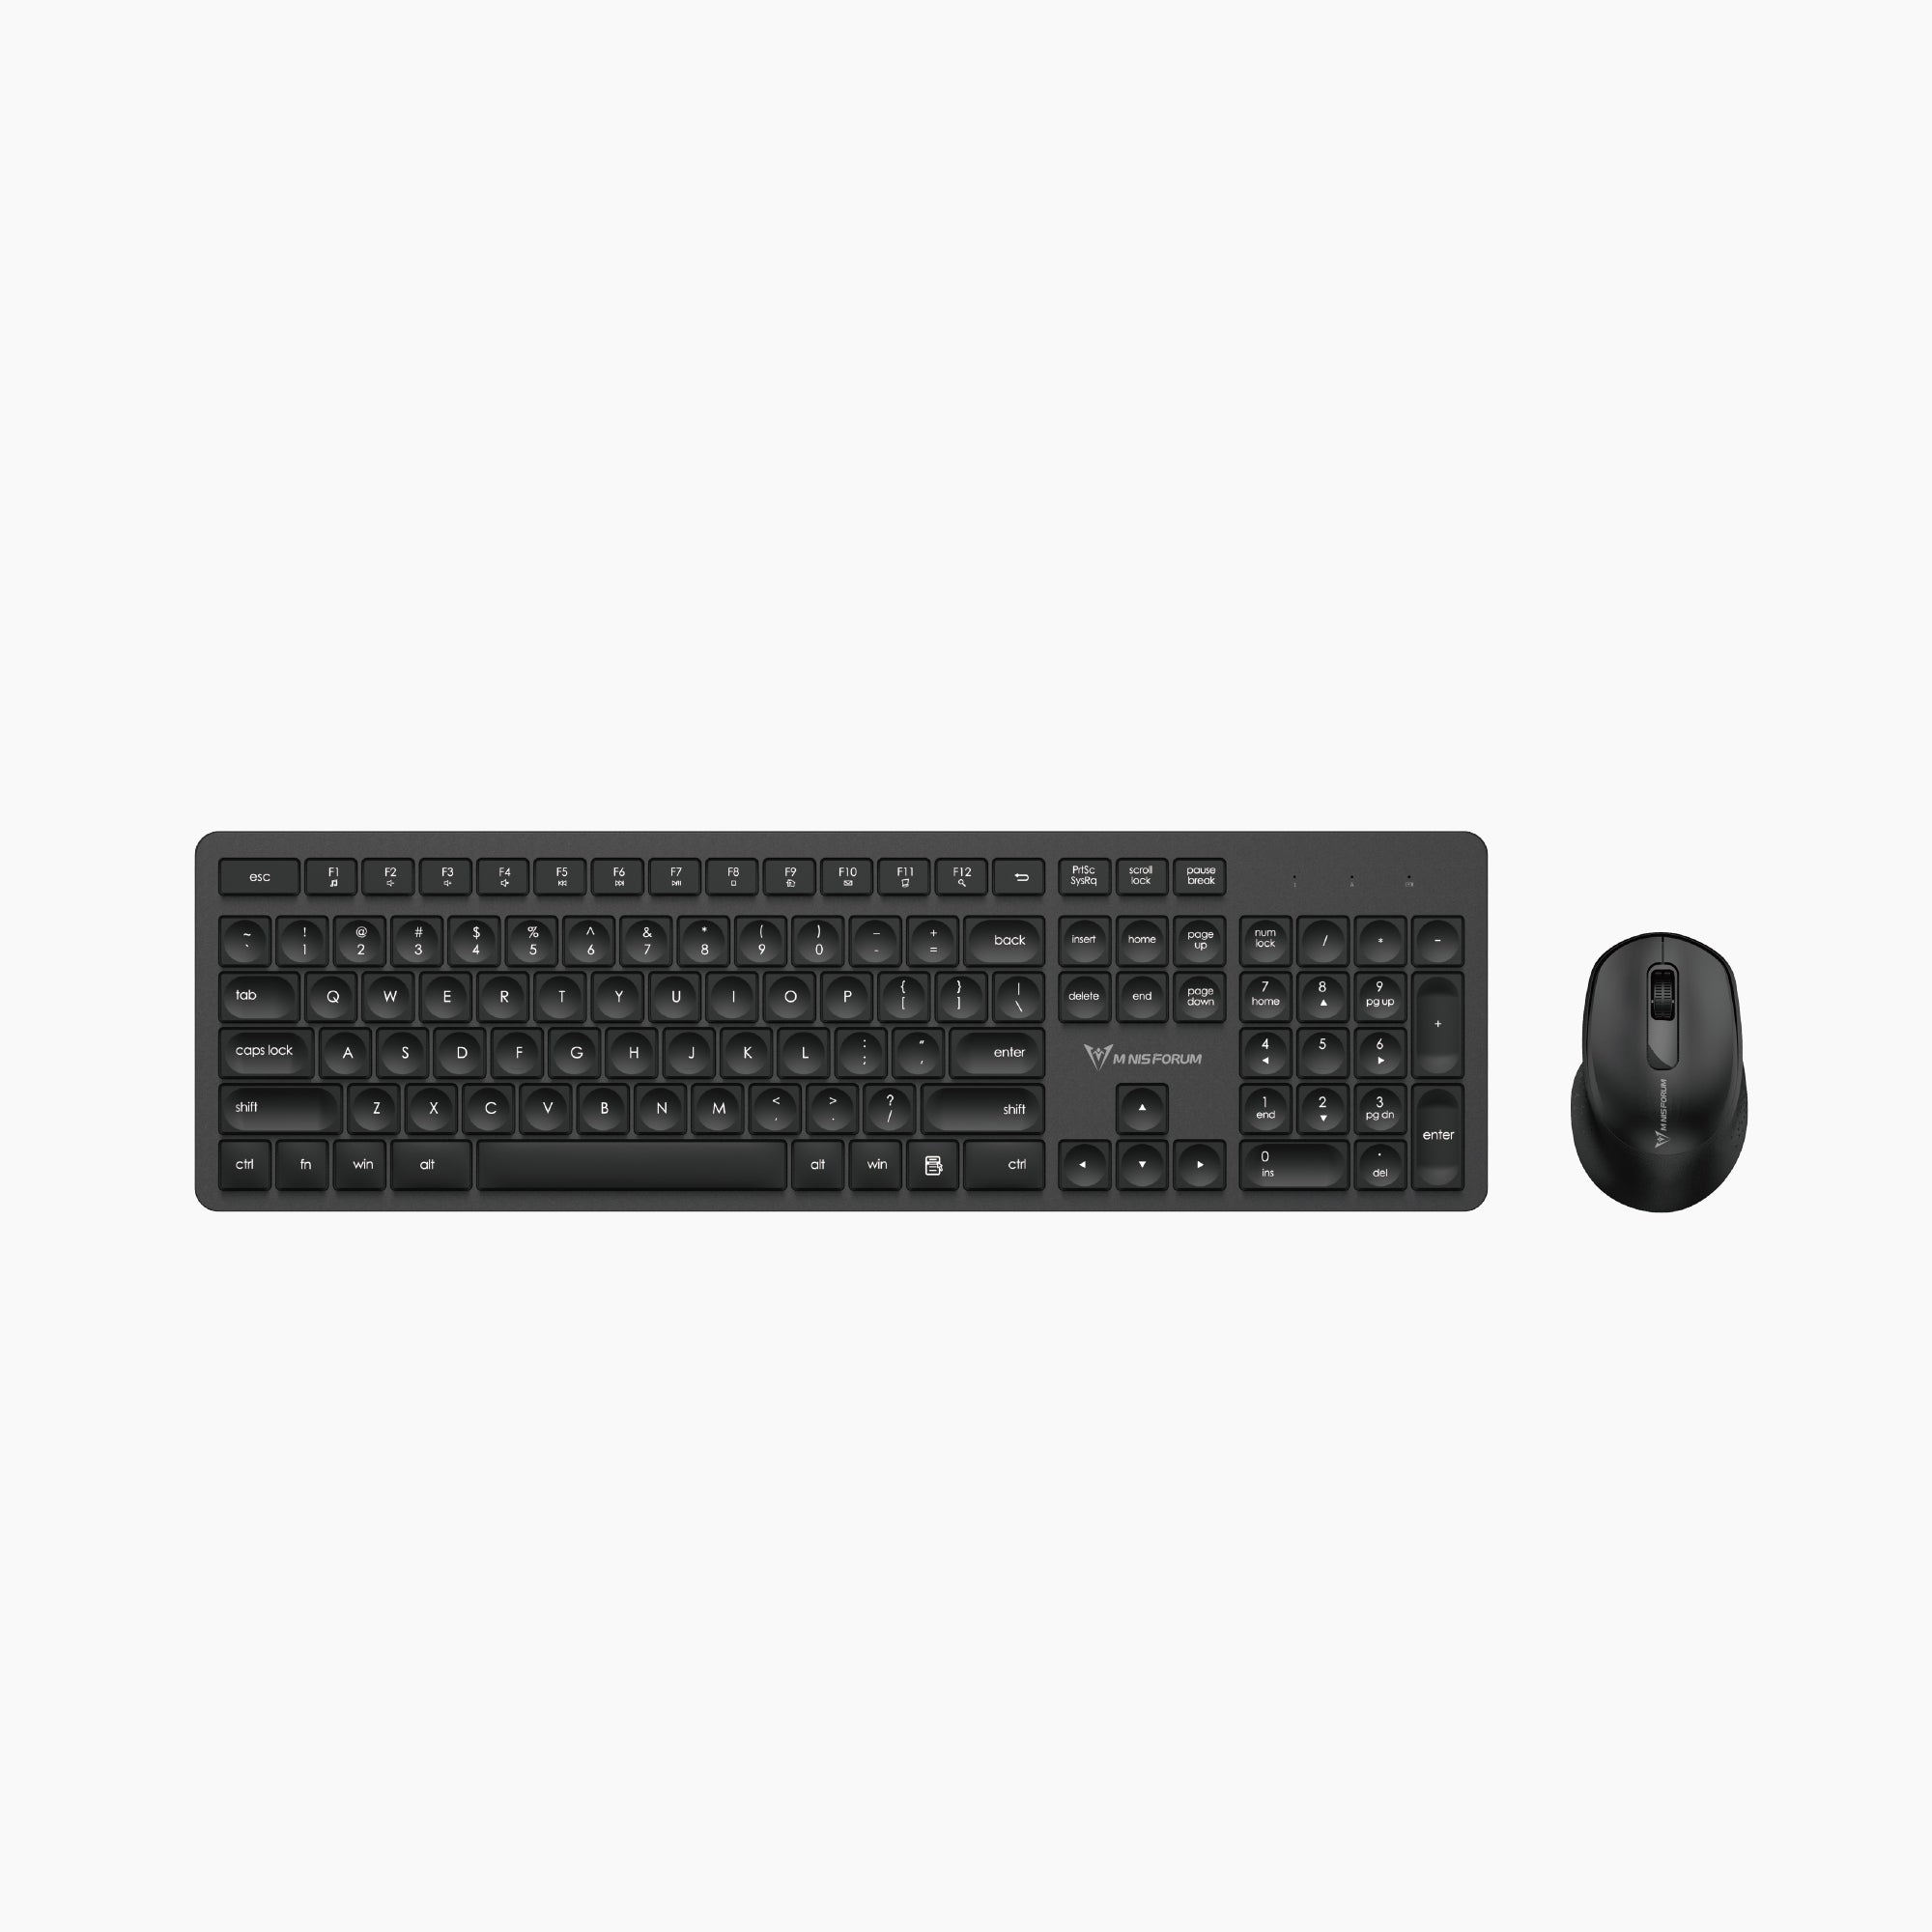 MKB104 Keyboard & Mouse Set